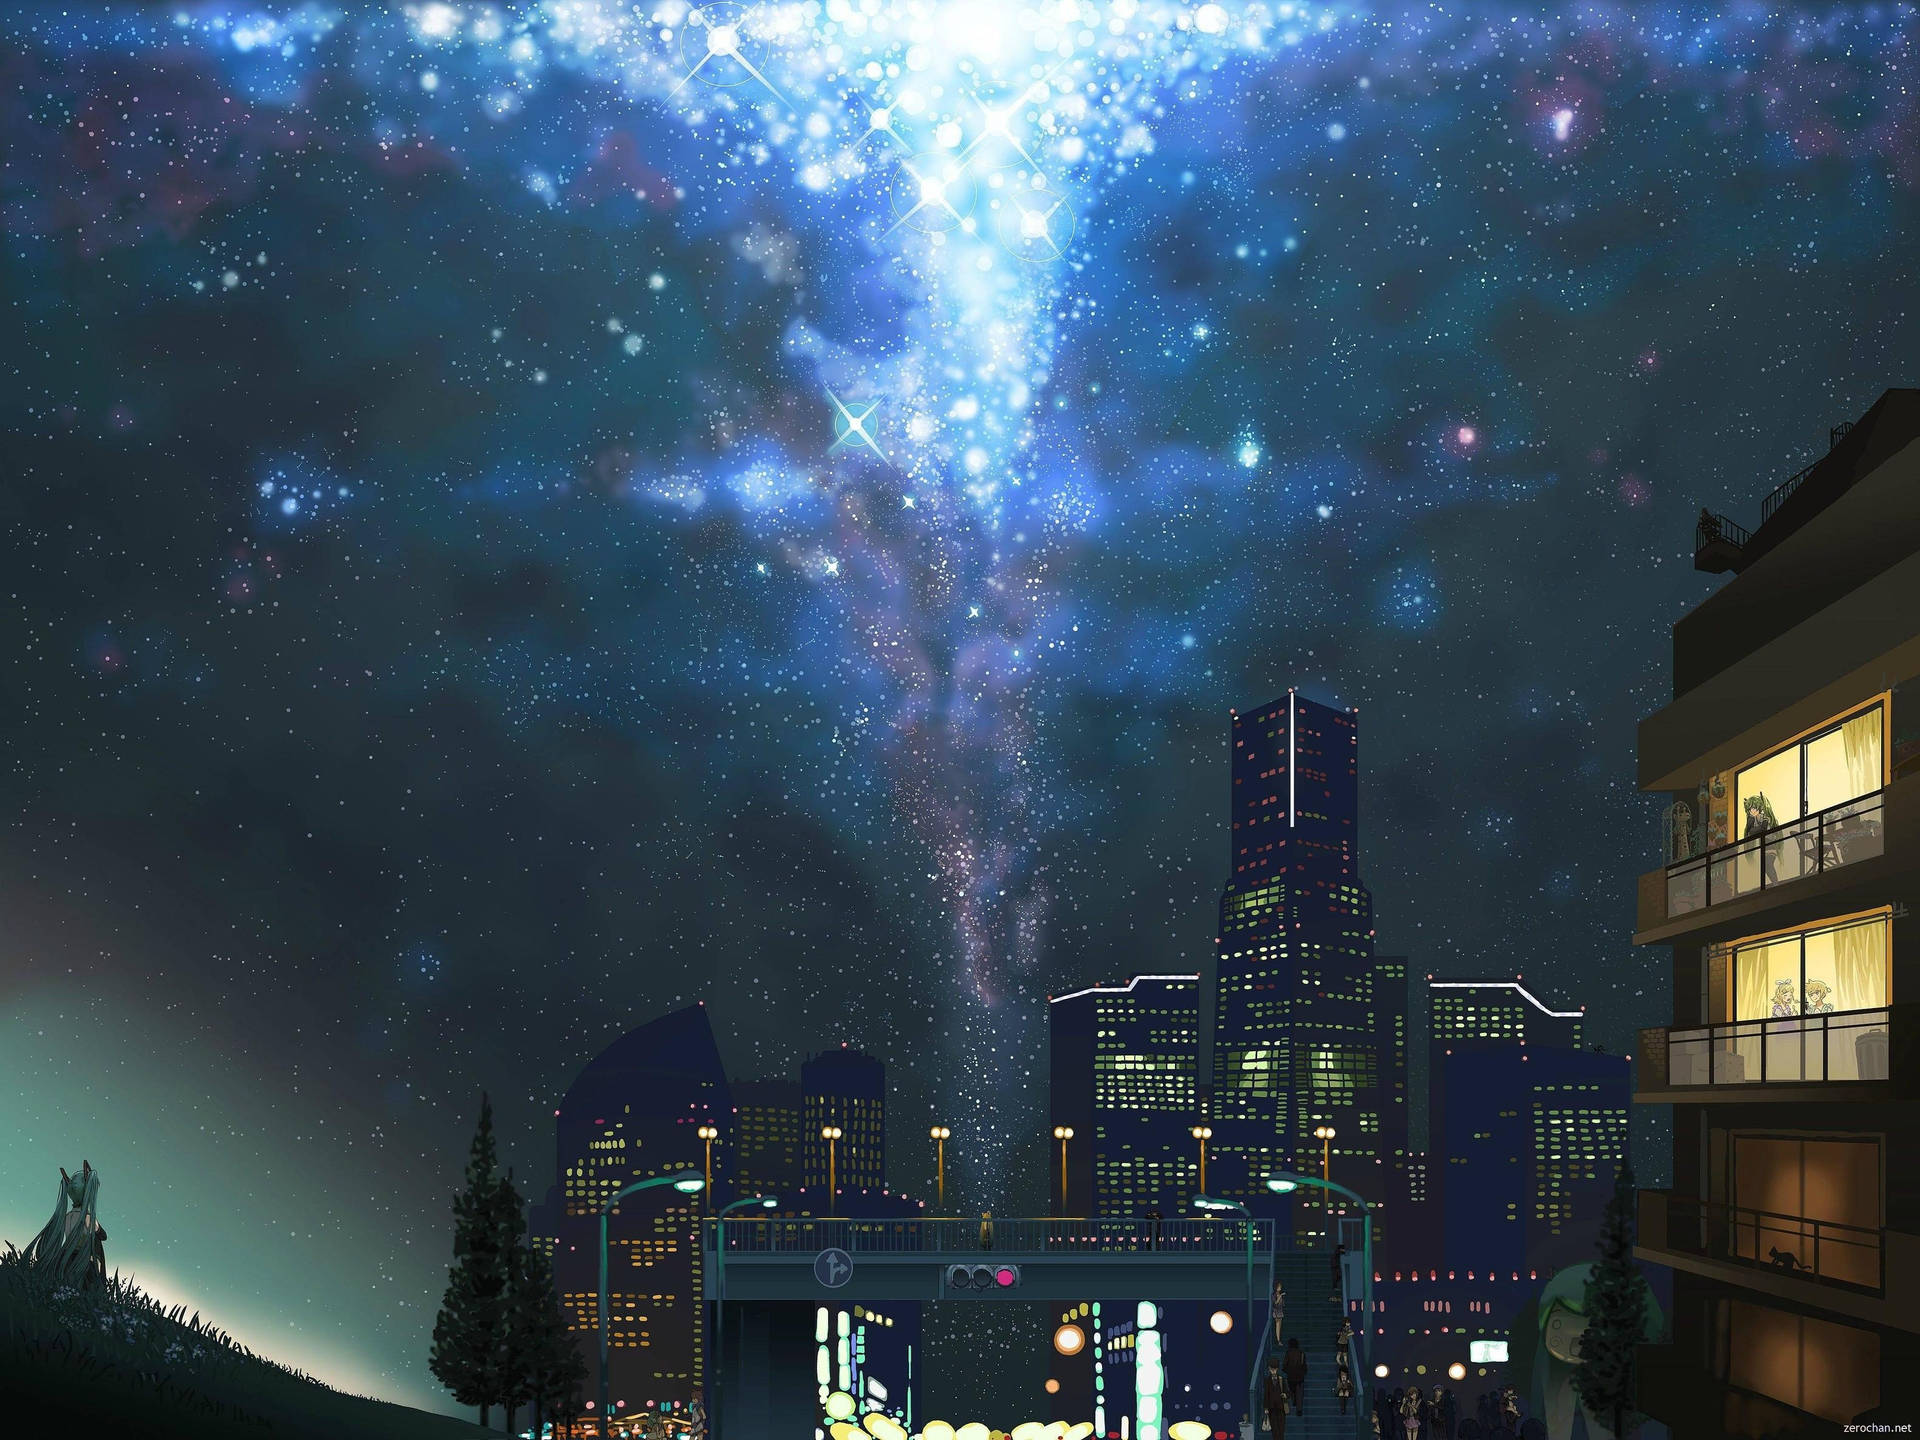 Bộ sưu tập ảnh nền anime đêm thành phố sẽ mang đến cho bạn cảm giác bị cuốn hút bởi những ánh đèn lung linh và những tòa nhà cao chọc trời. Translation: The collection of anime night city wallpapers will give you a mesmerizing feeling of being drawn to the sparkling lights and tall skyscrapers.